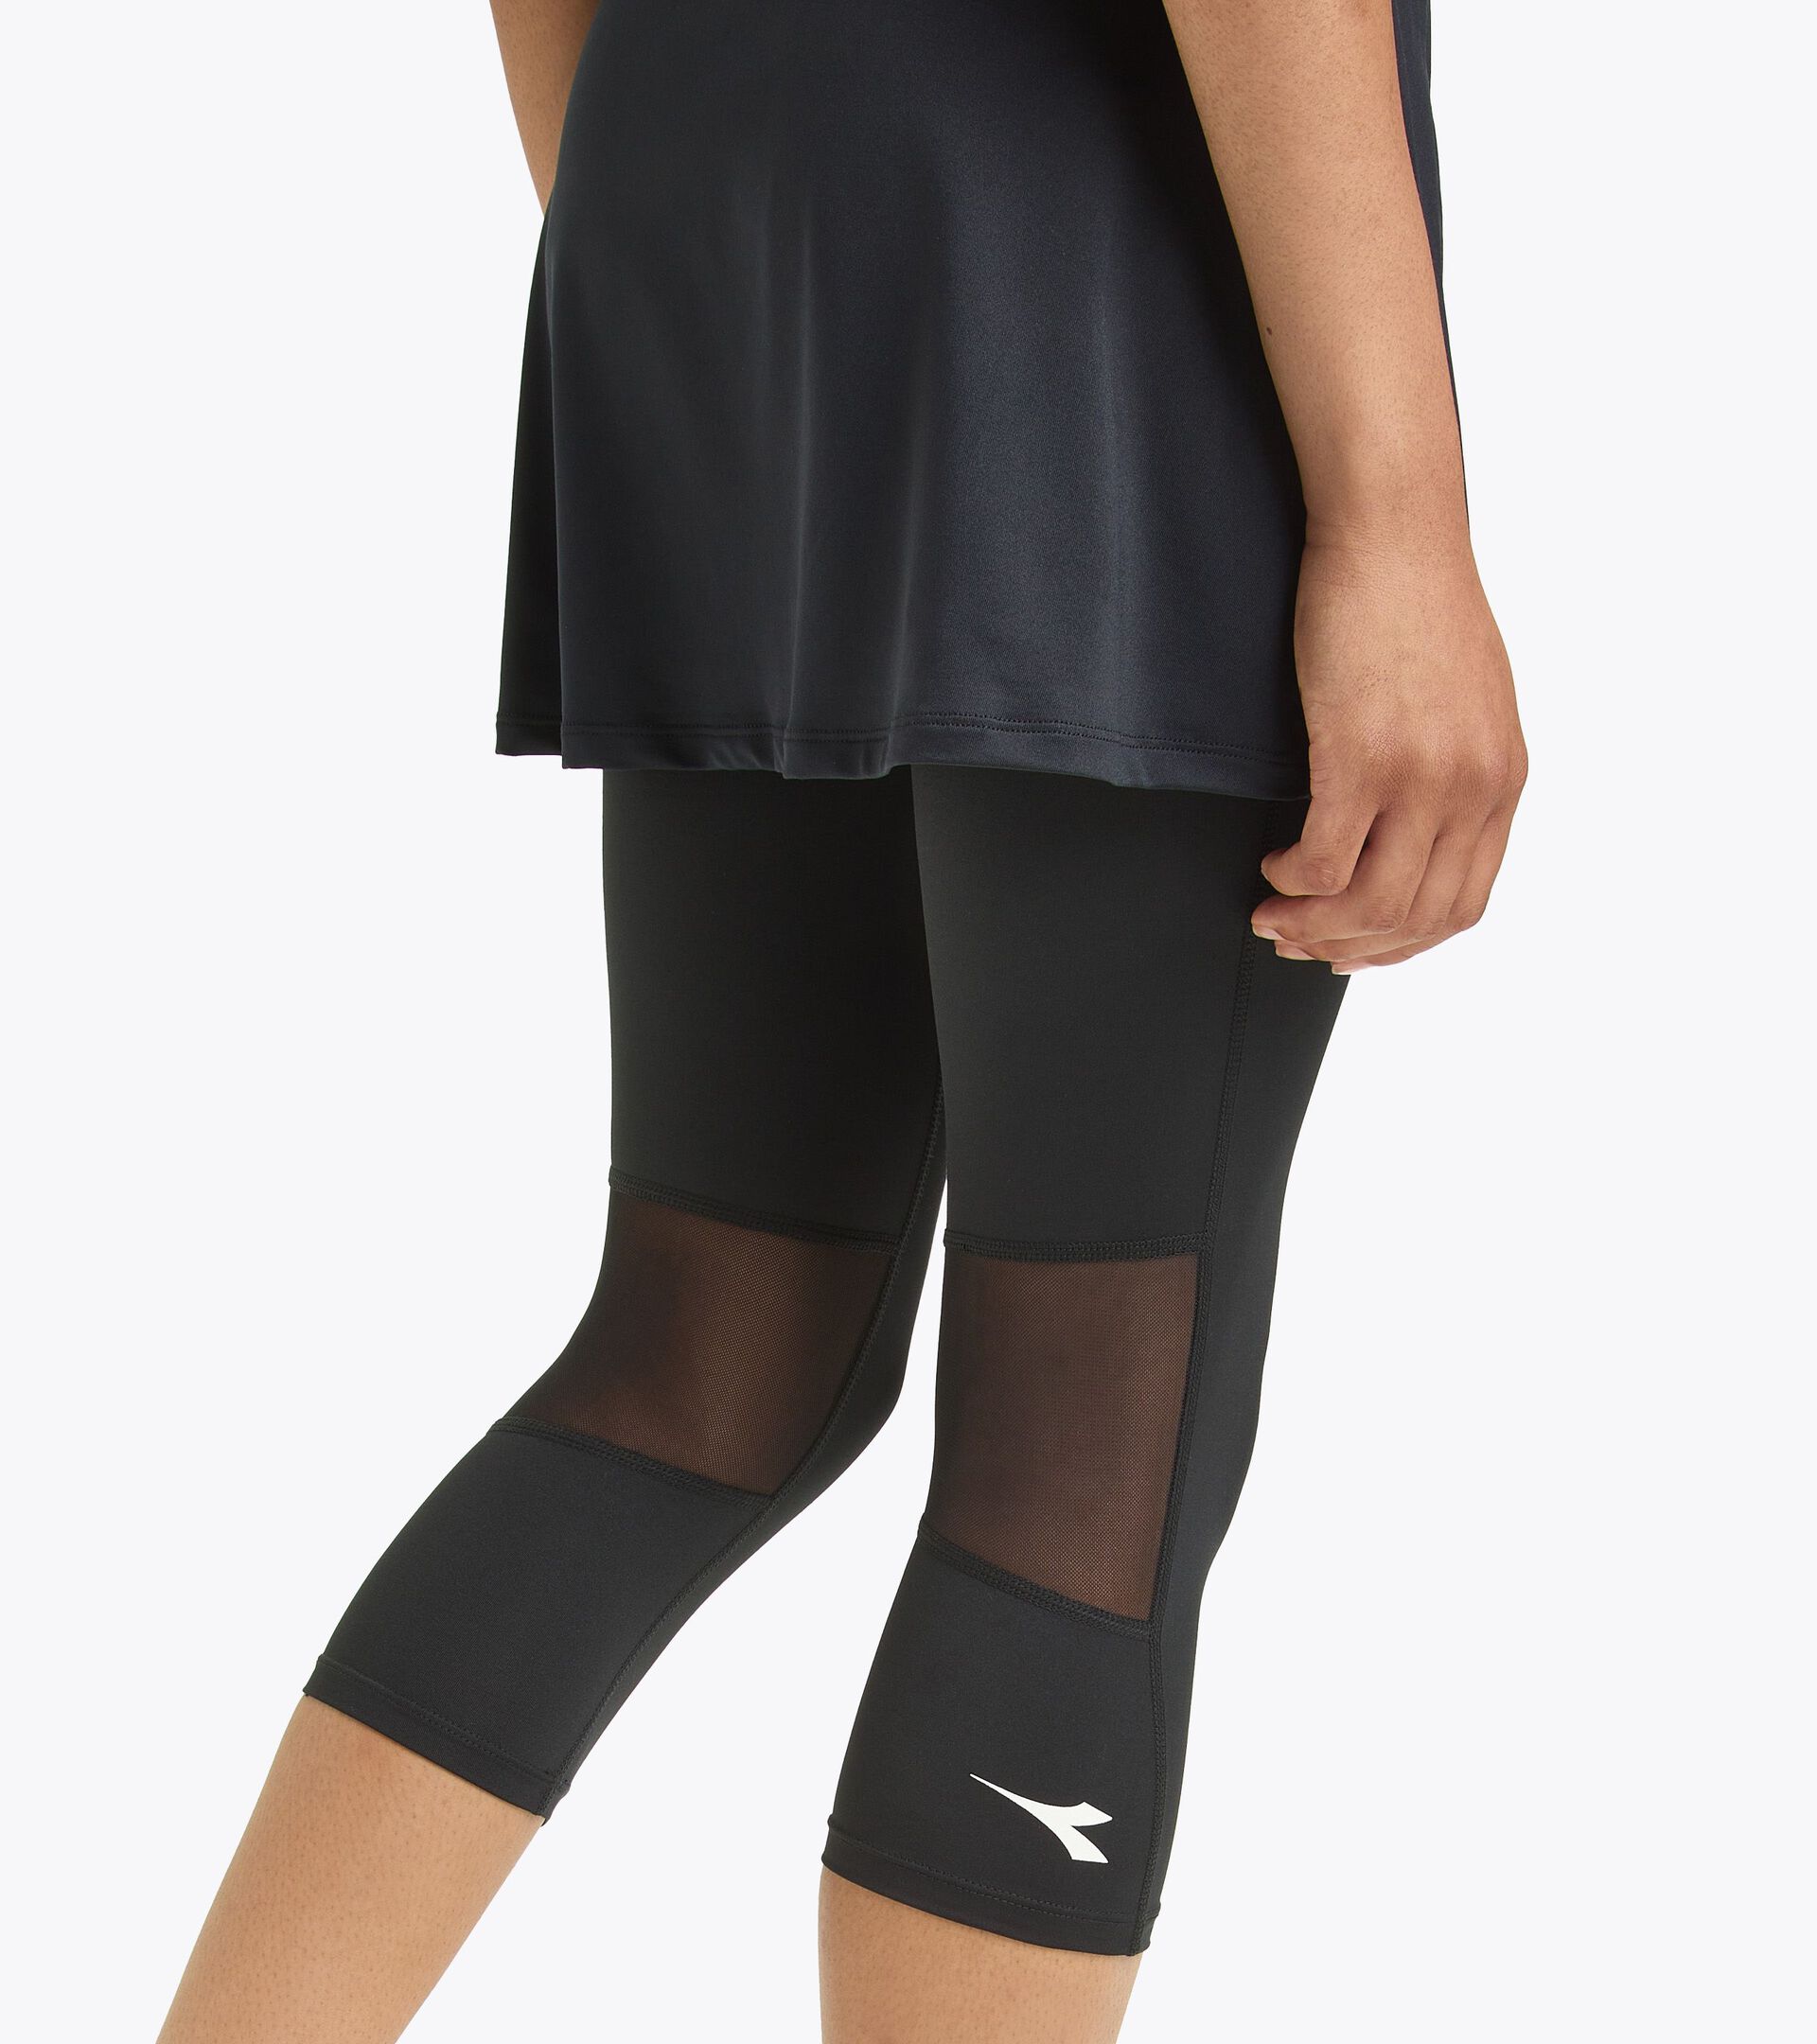 Tennis skirt - Women L. POWER SKIRT BLACK - Diadora